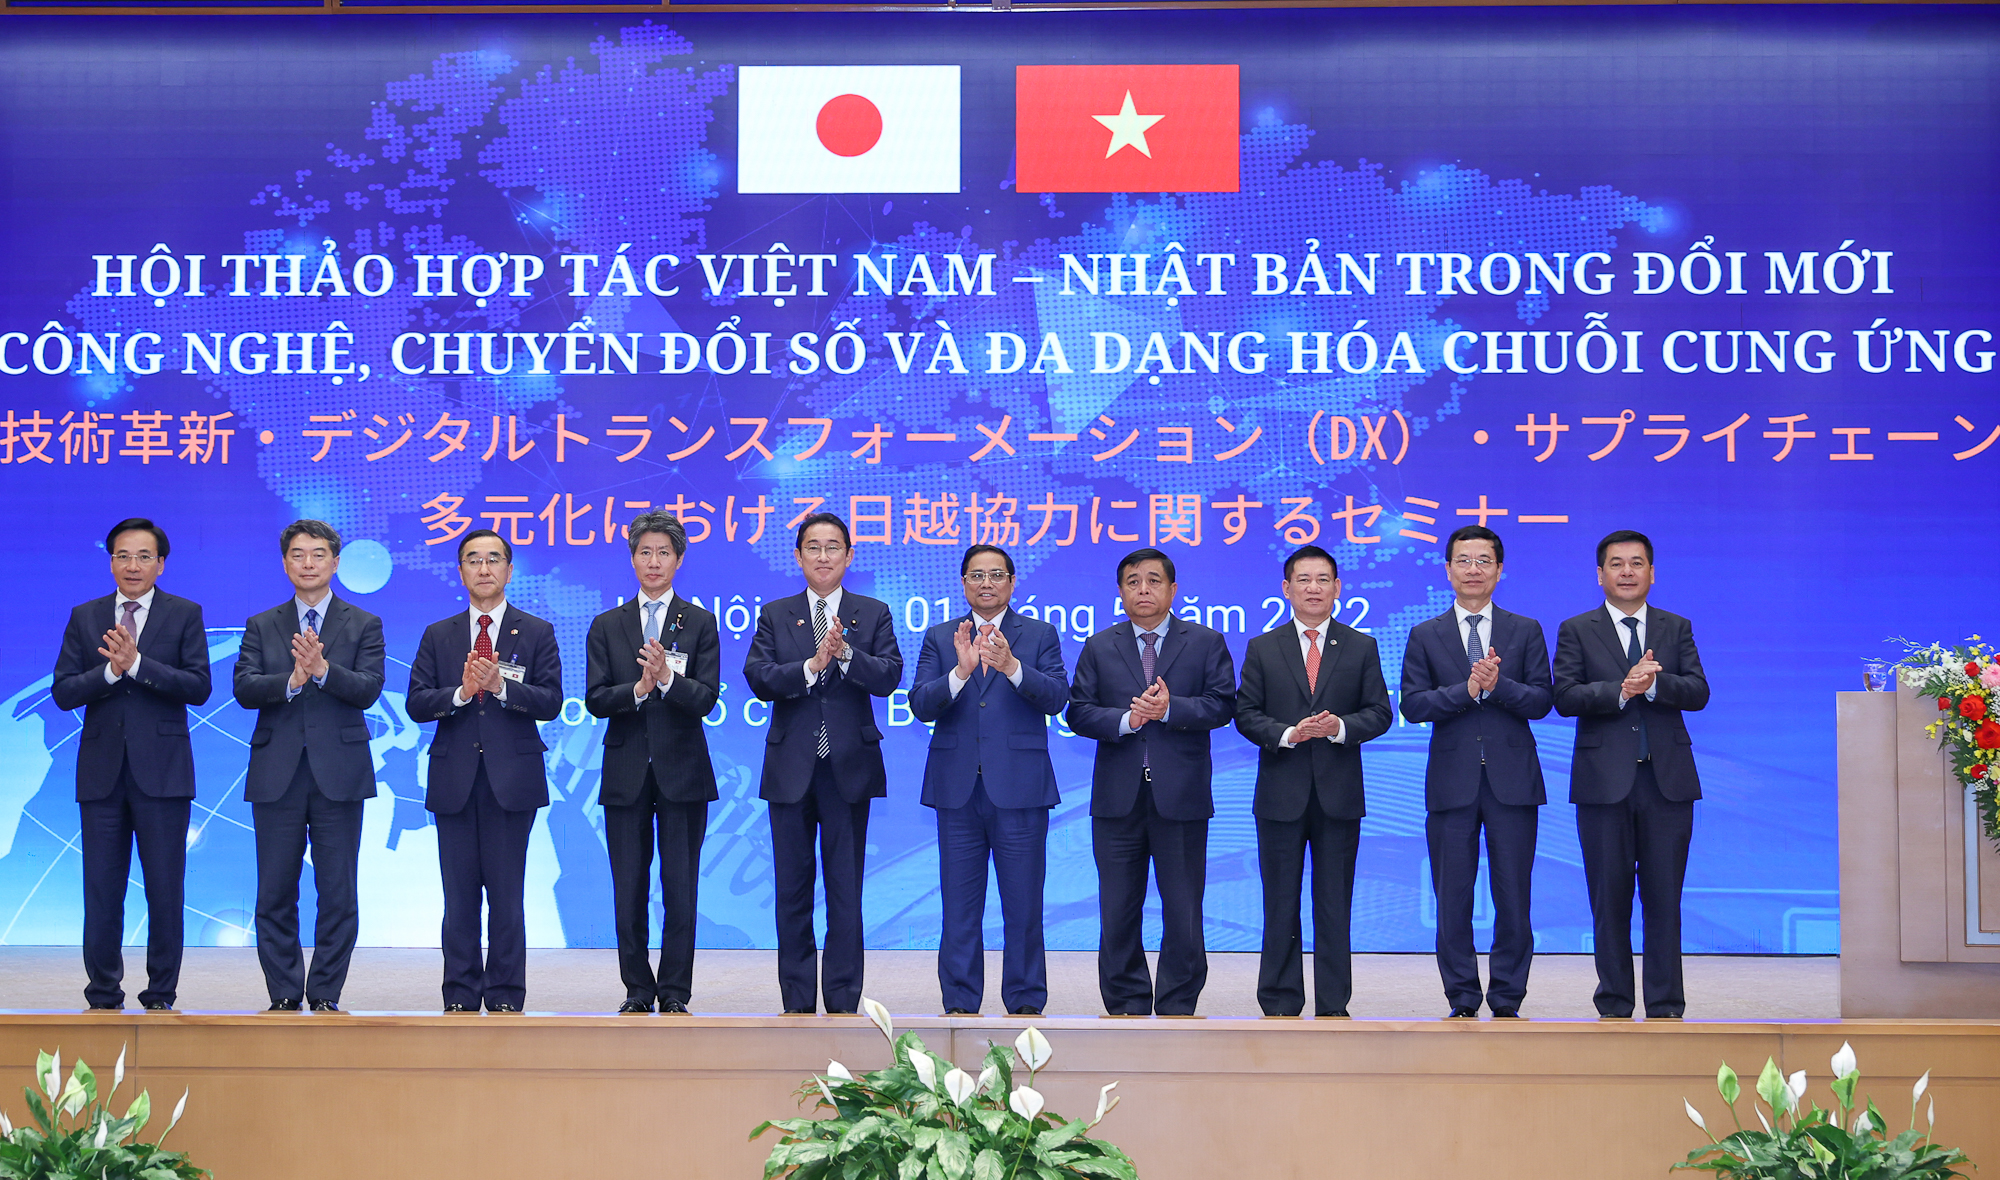 Thủ tướng Nhật Bản: Khả năng hợp tác với Việt Nam là không có giới hạn - Ảnh 4.